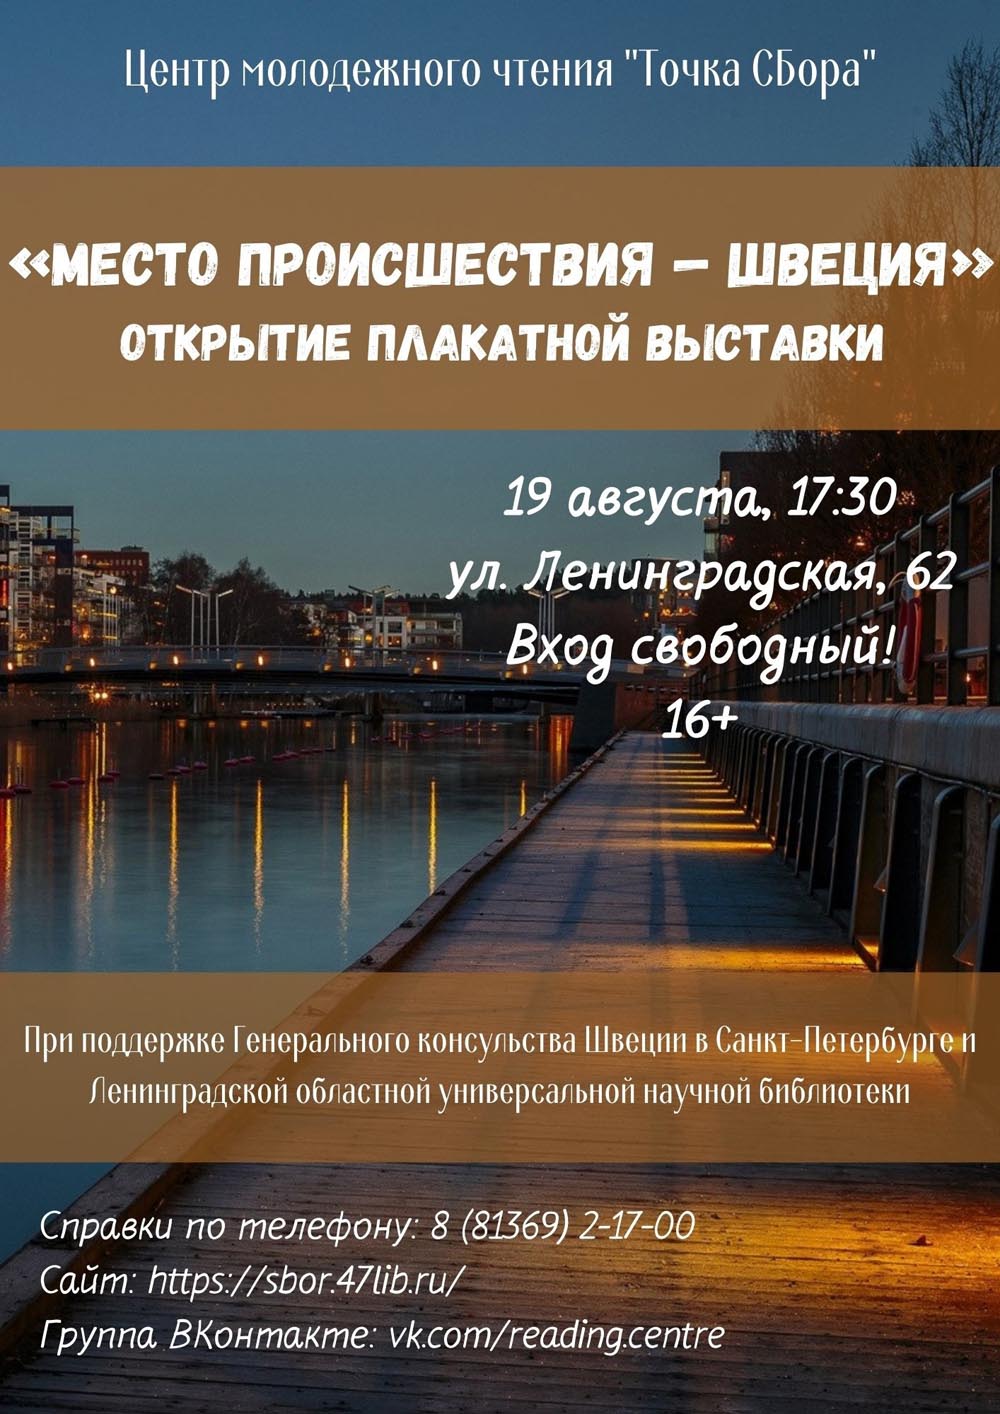 В Сосновом Бору в «Точке СБора» откроется плакатная выставка Генерального консульства Швеции в Санкт-Петербурге